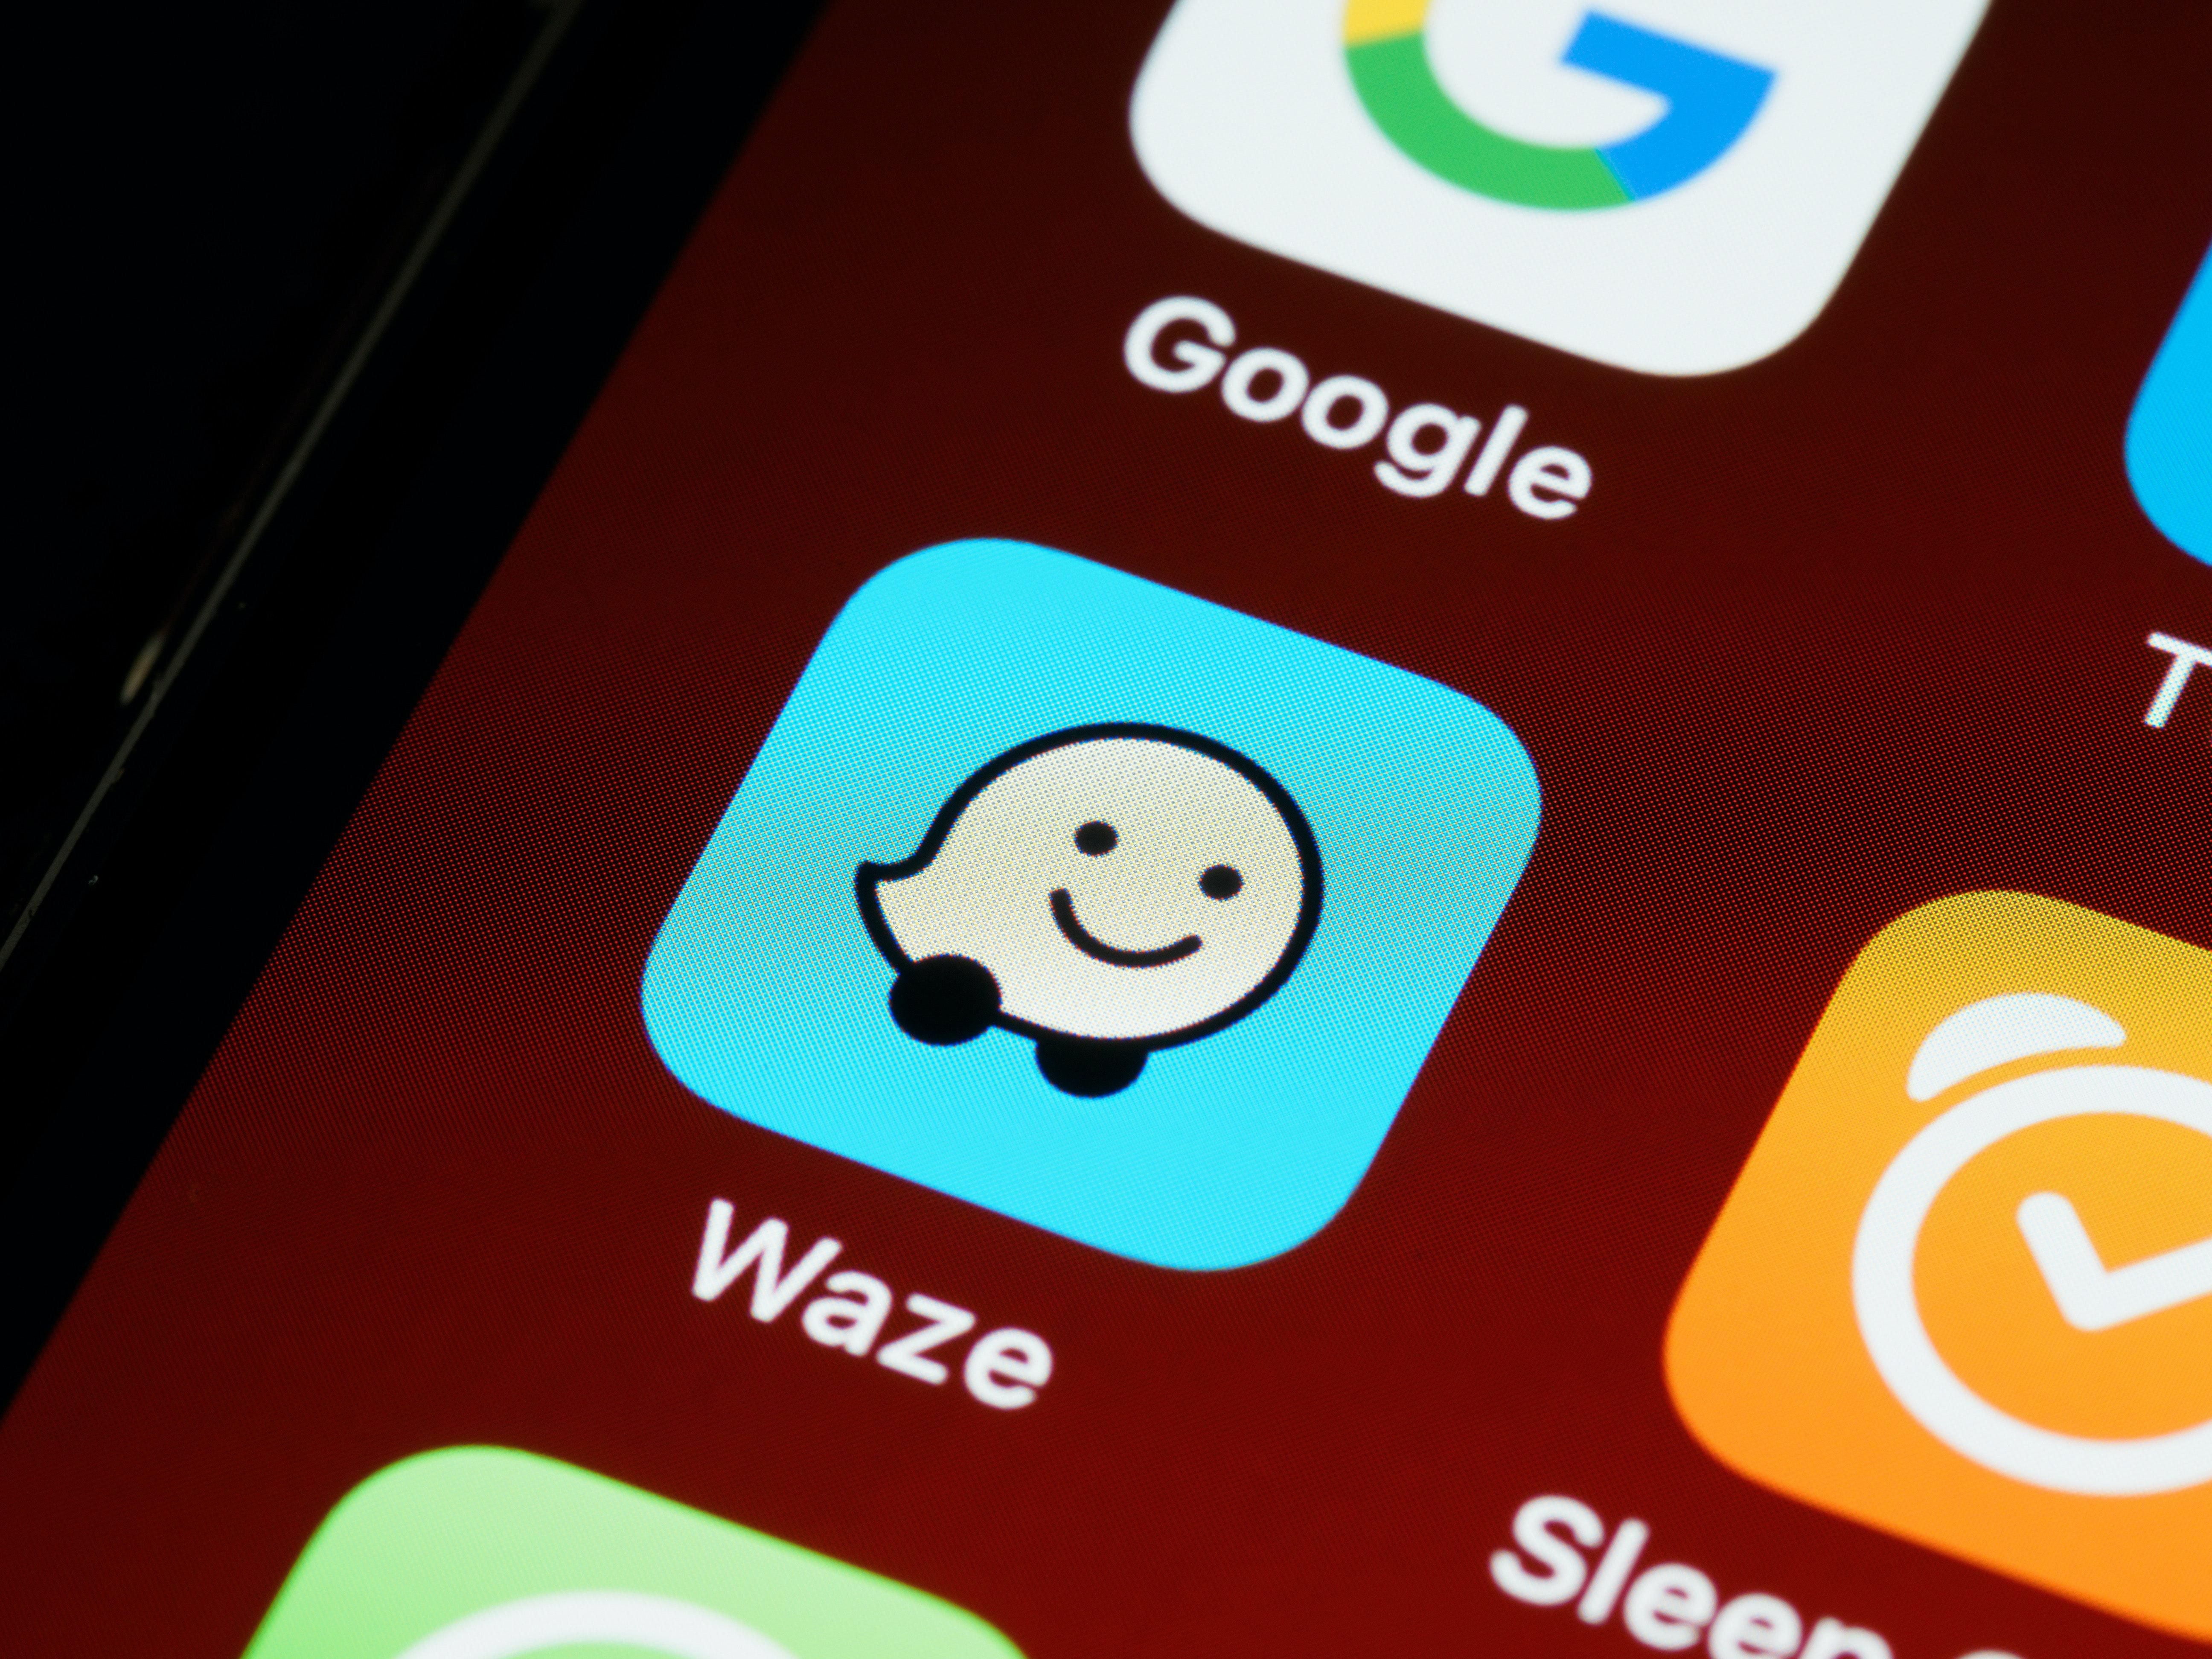 Waze applikáció a telefonon, mosolygós szimbólummal